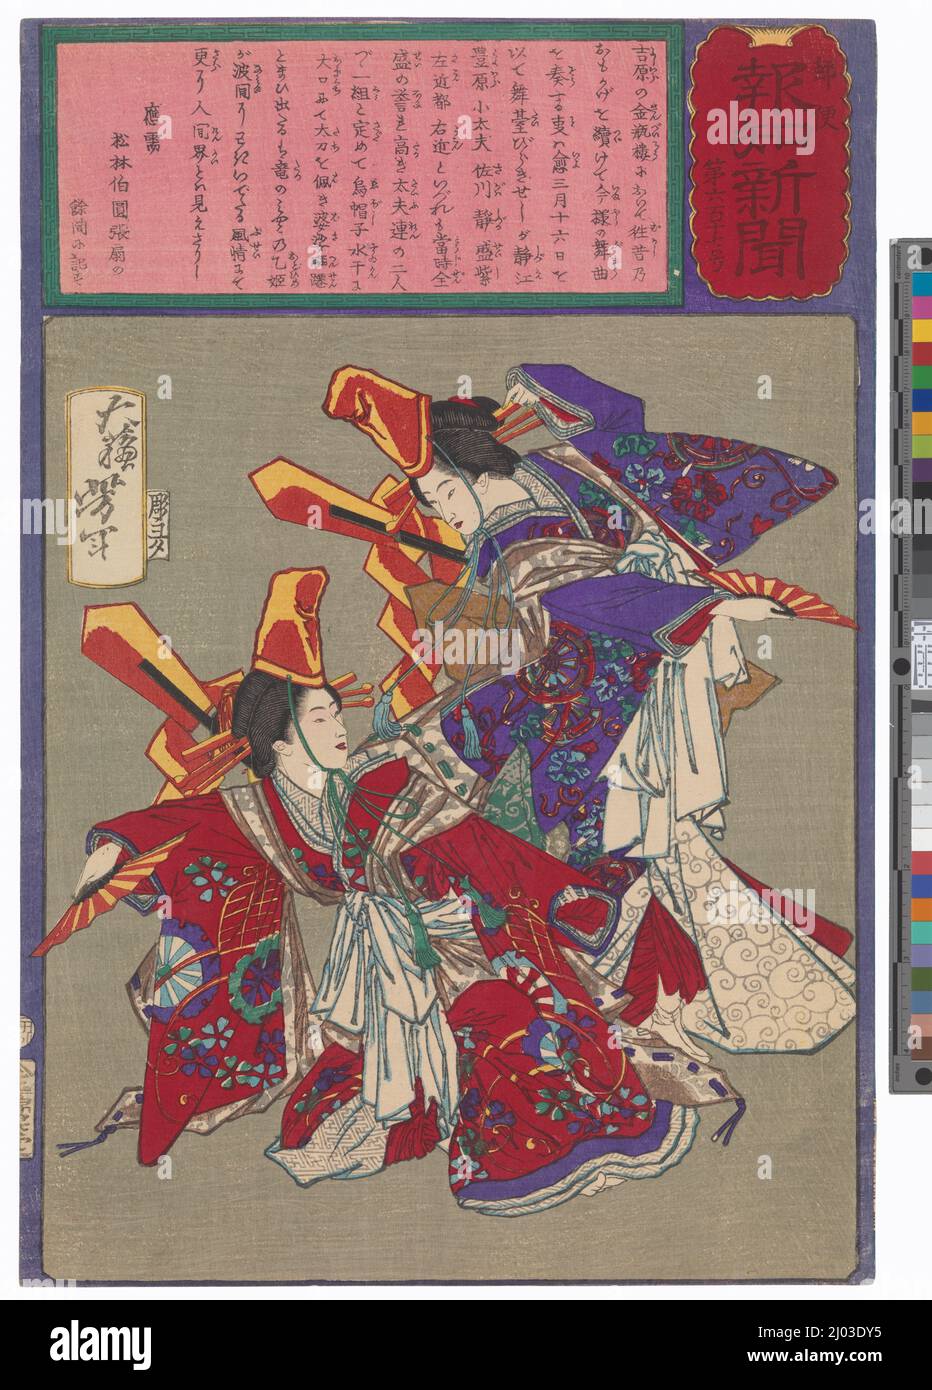 Danse Imayō jouée à la maison Kimpeirō dans le district de Yoshiwara. Tsukioka Yoshitoshi (Japon, 1839-1892). Japon, 1875, avril. Imprimés; blocs de bois. Imprimé color block Banque D'Images